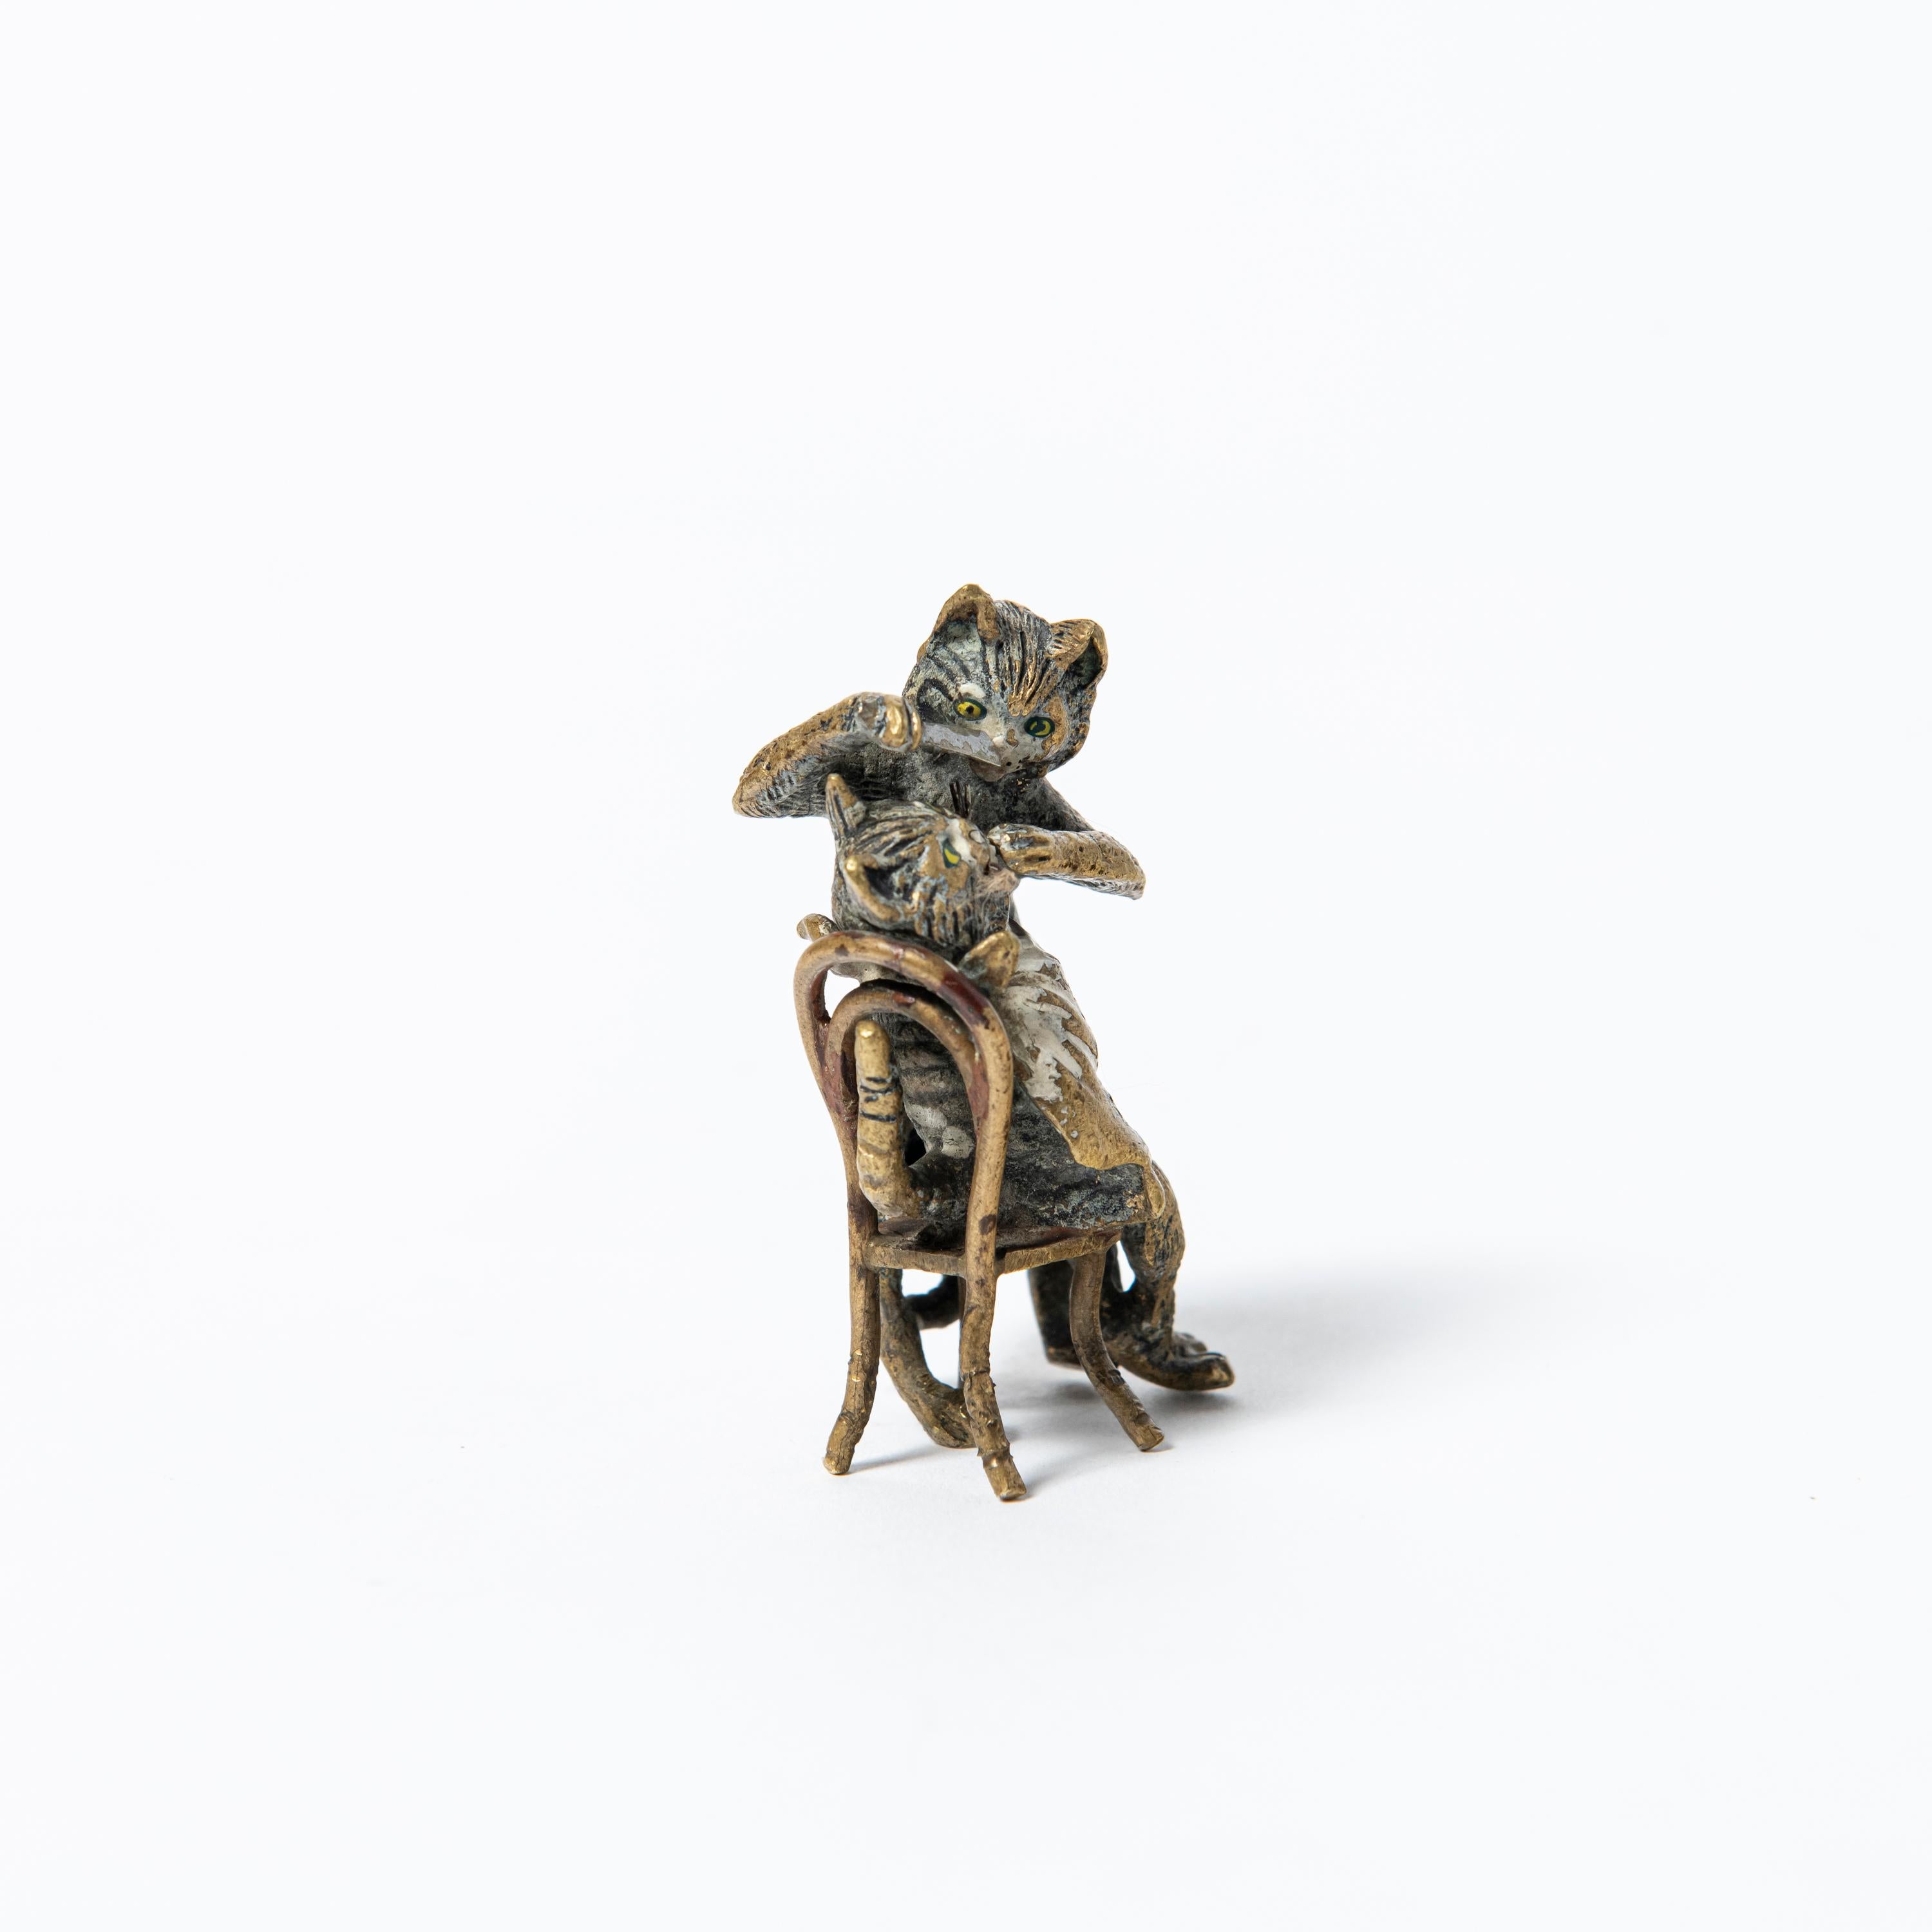 Kalt bemalte Bronzeskulptur einer Katze, die Franz Bergmann zugeschrieben wird. Österreich, Anfang des 20. Jahrhunderts.